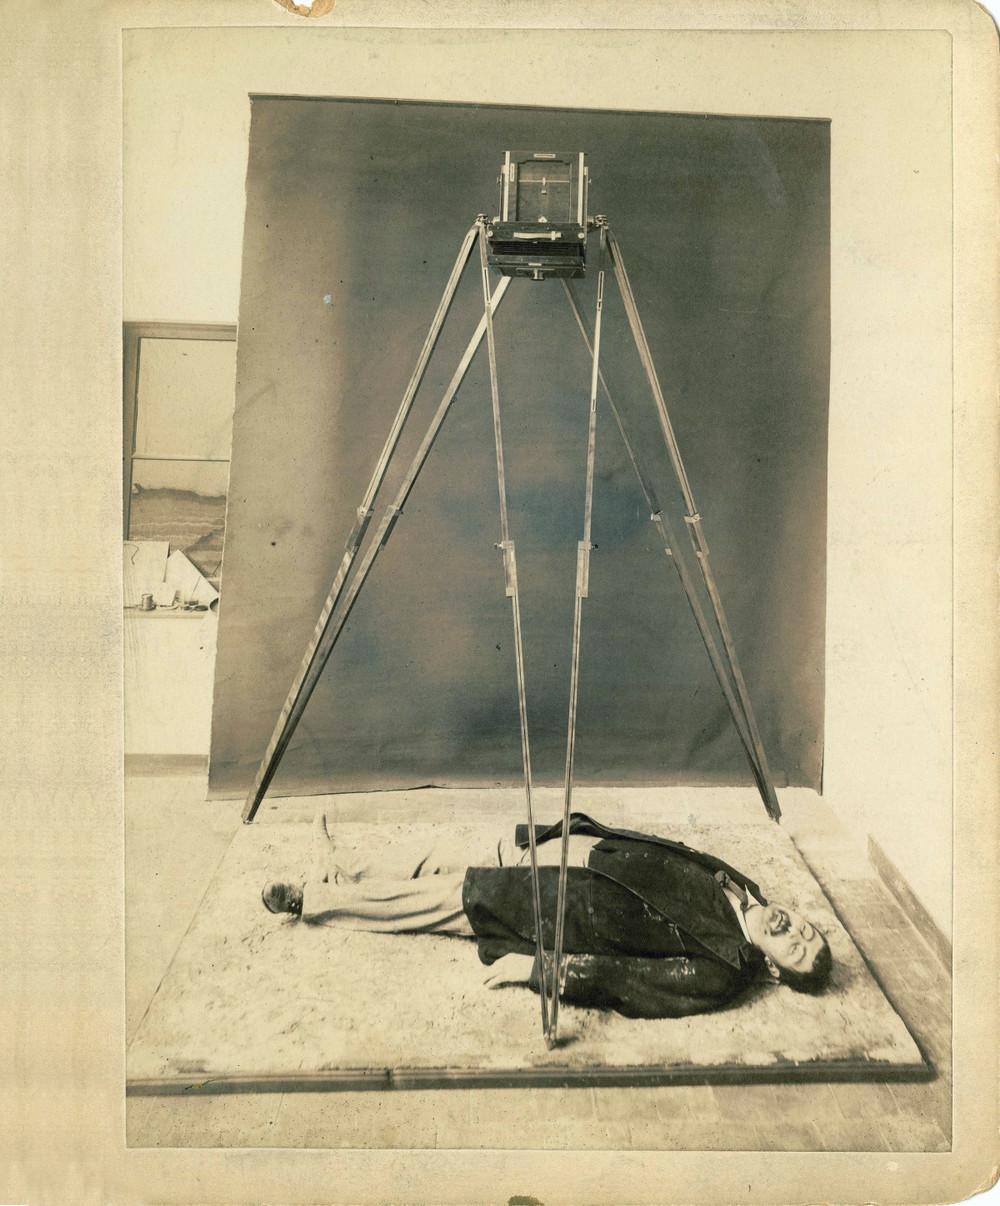 Ειδική μέθοδος φωτογράφησης πτωμάτων. Τοποθετούσαν την κάμερα ακριβώς πάνω απ' το πτώμα, έτσι ώστε το κέντρο να βρίσκεται ανάμεσα στα μάτια του. Τους βοηθούσε να υπολογίσουν τις ακριβείς σωματικές διαστάσεις του